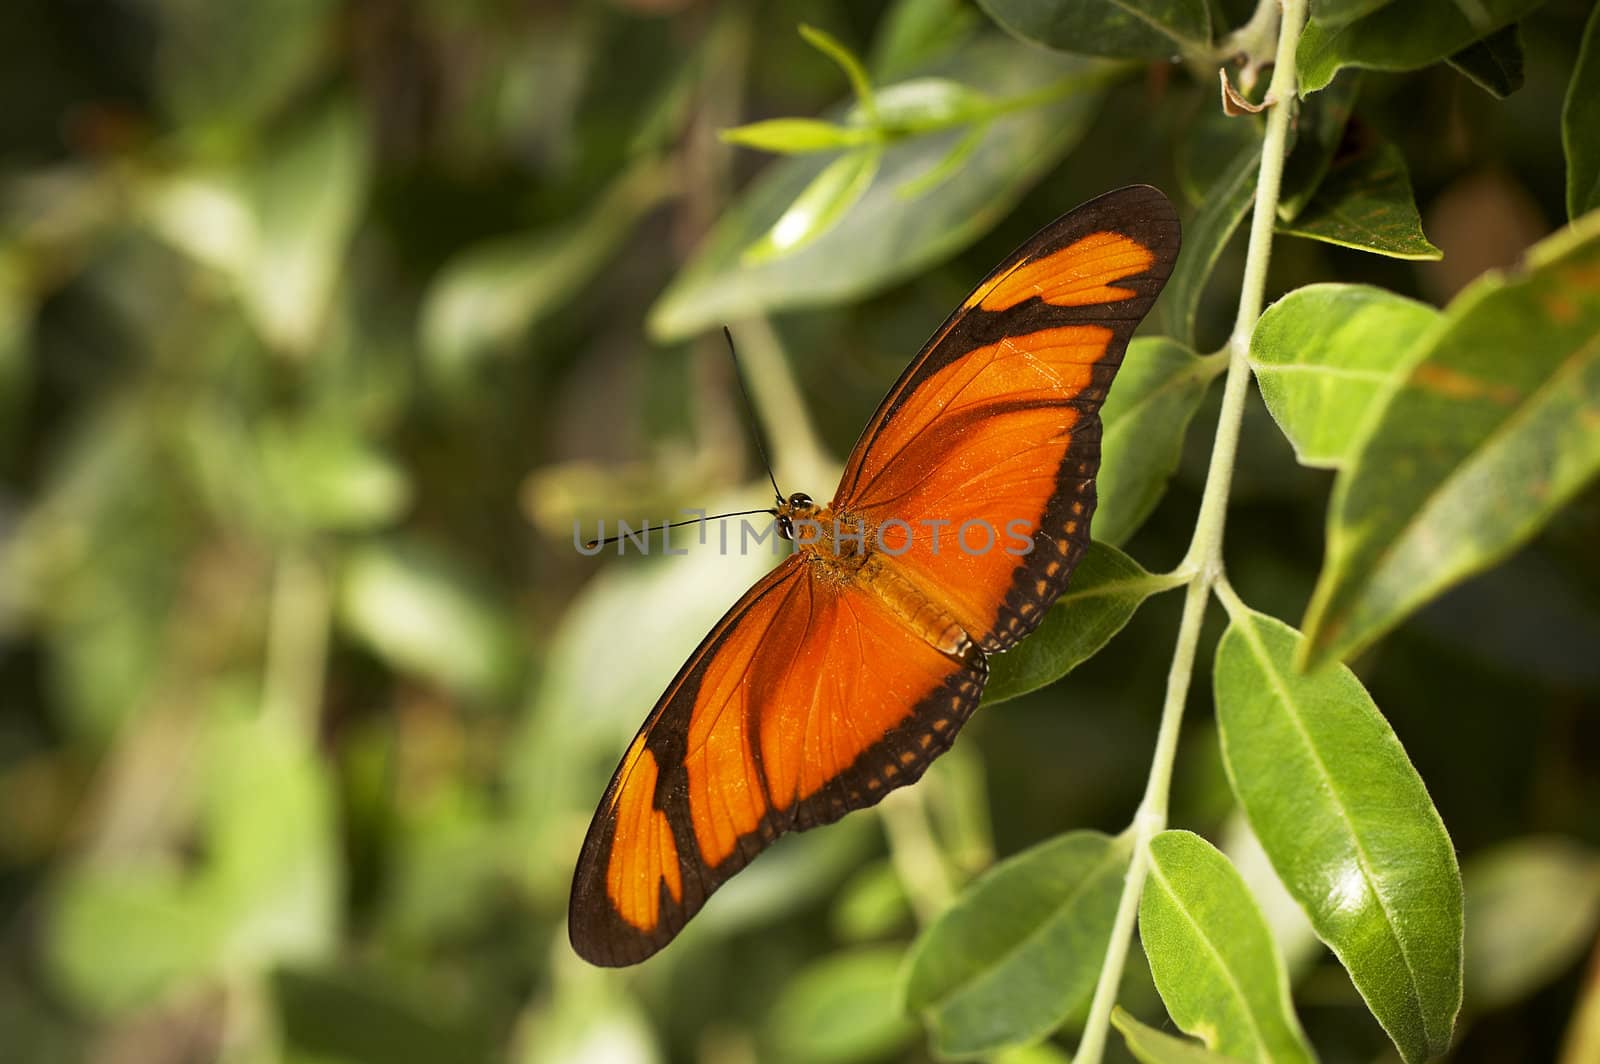 Orange butterfly straightening wings on the garden